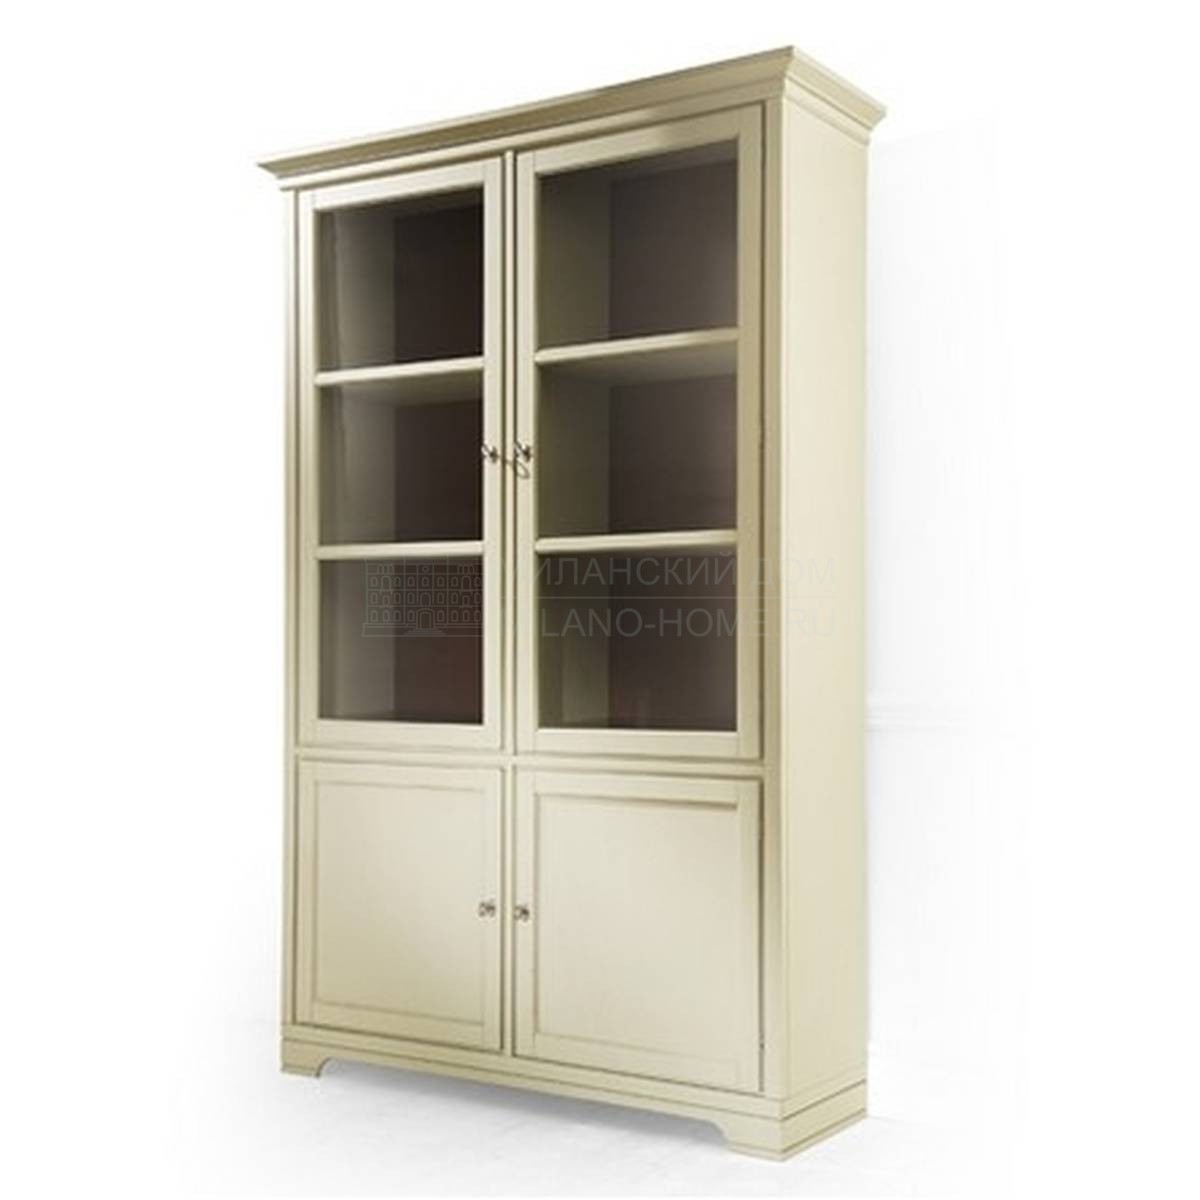 Кабинет Aspen two doors glass cabinet 2 из Италии фабрики MARIONI